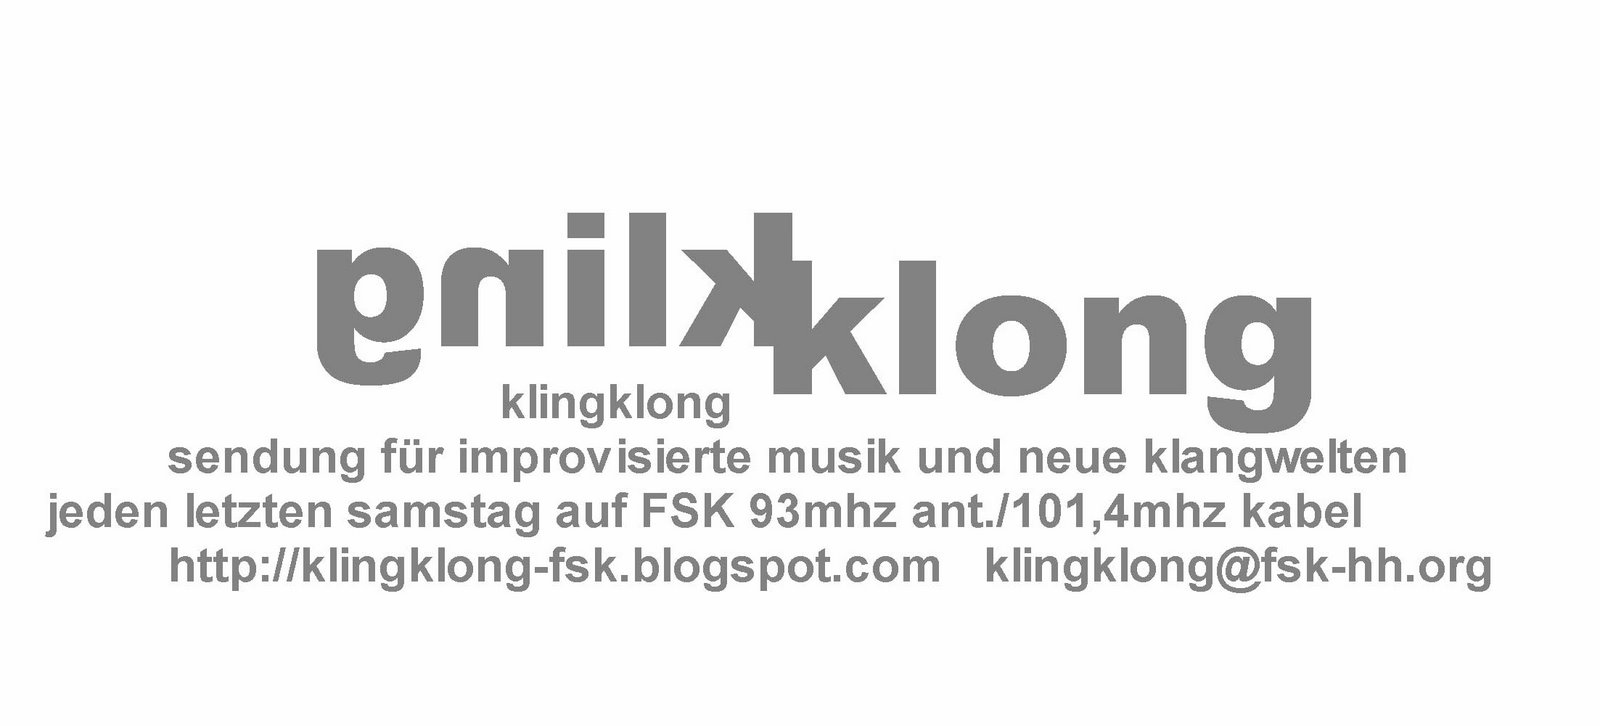 [kk-logo-fin-web.jpg]